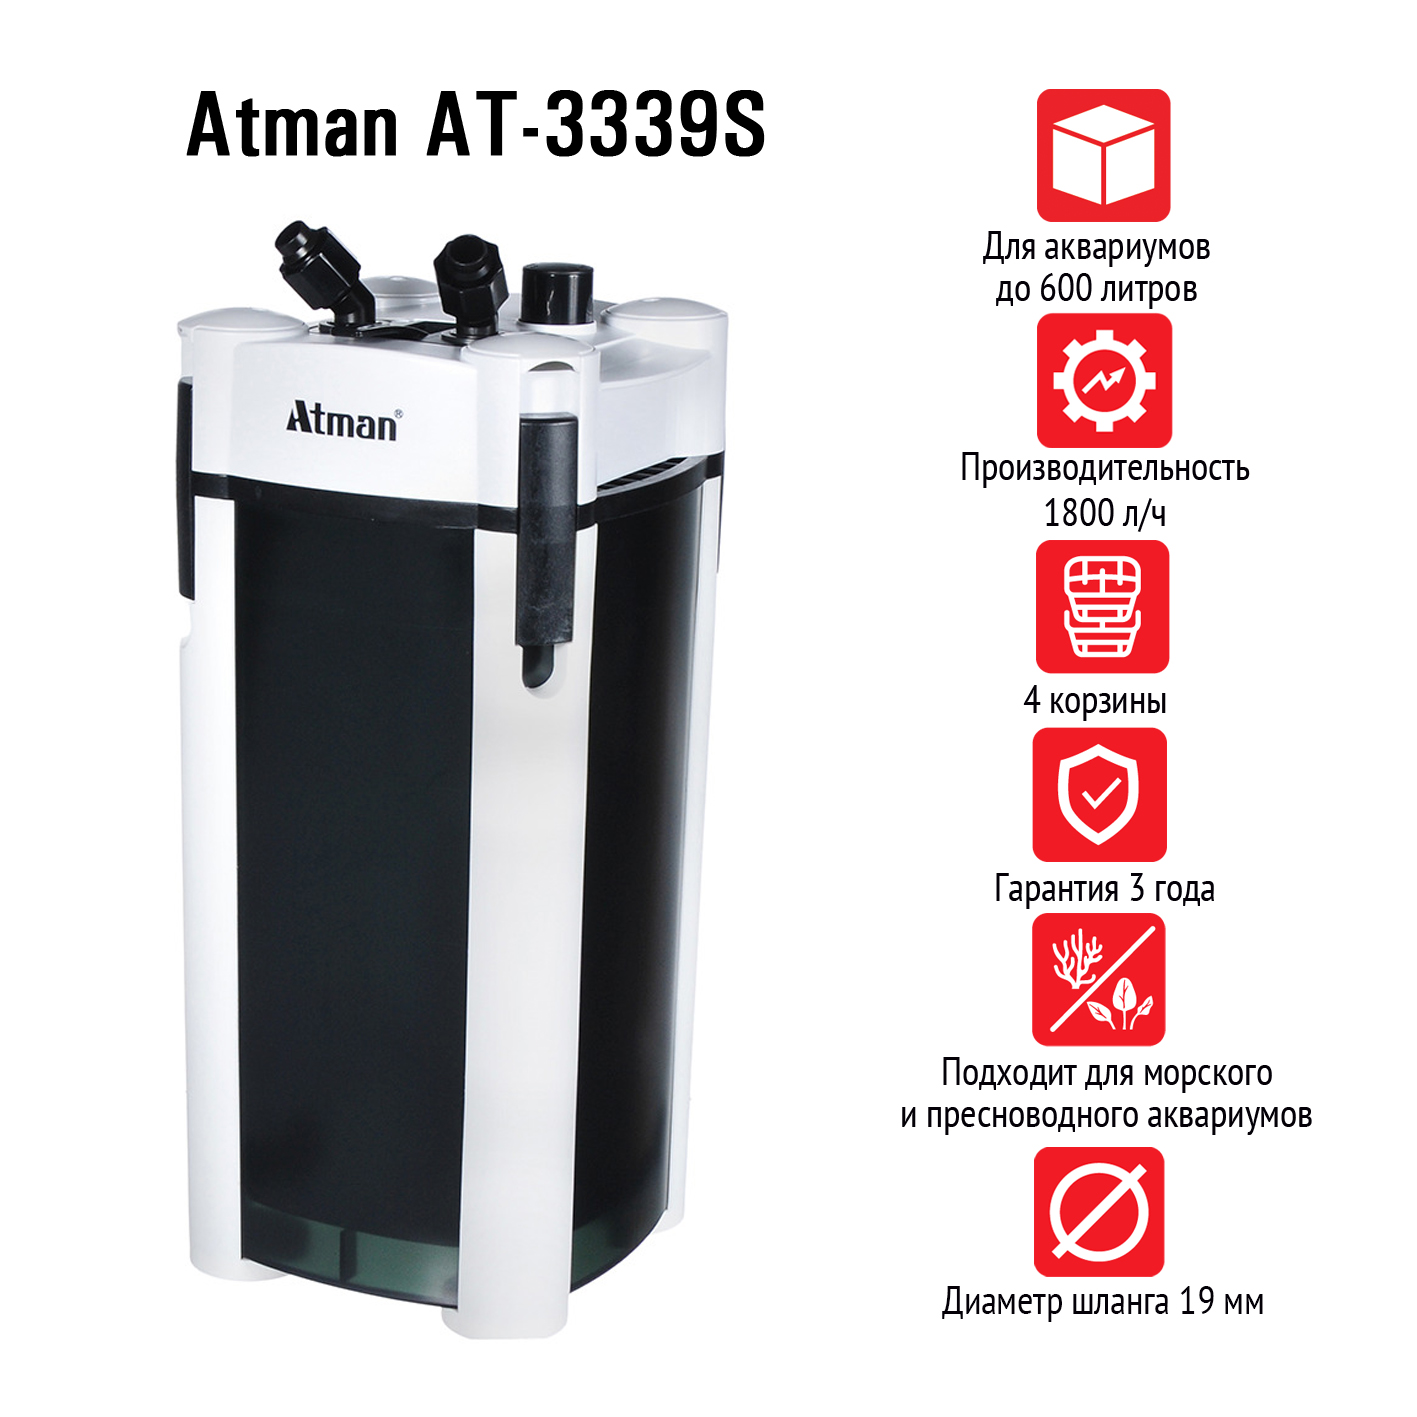 Внешний аквариумный фильтр Atman AT-3339S – купить в магазине аквариумов Акватория